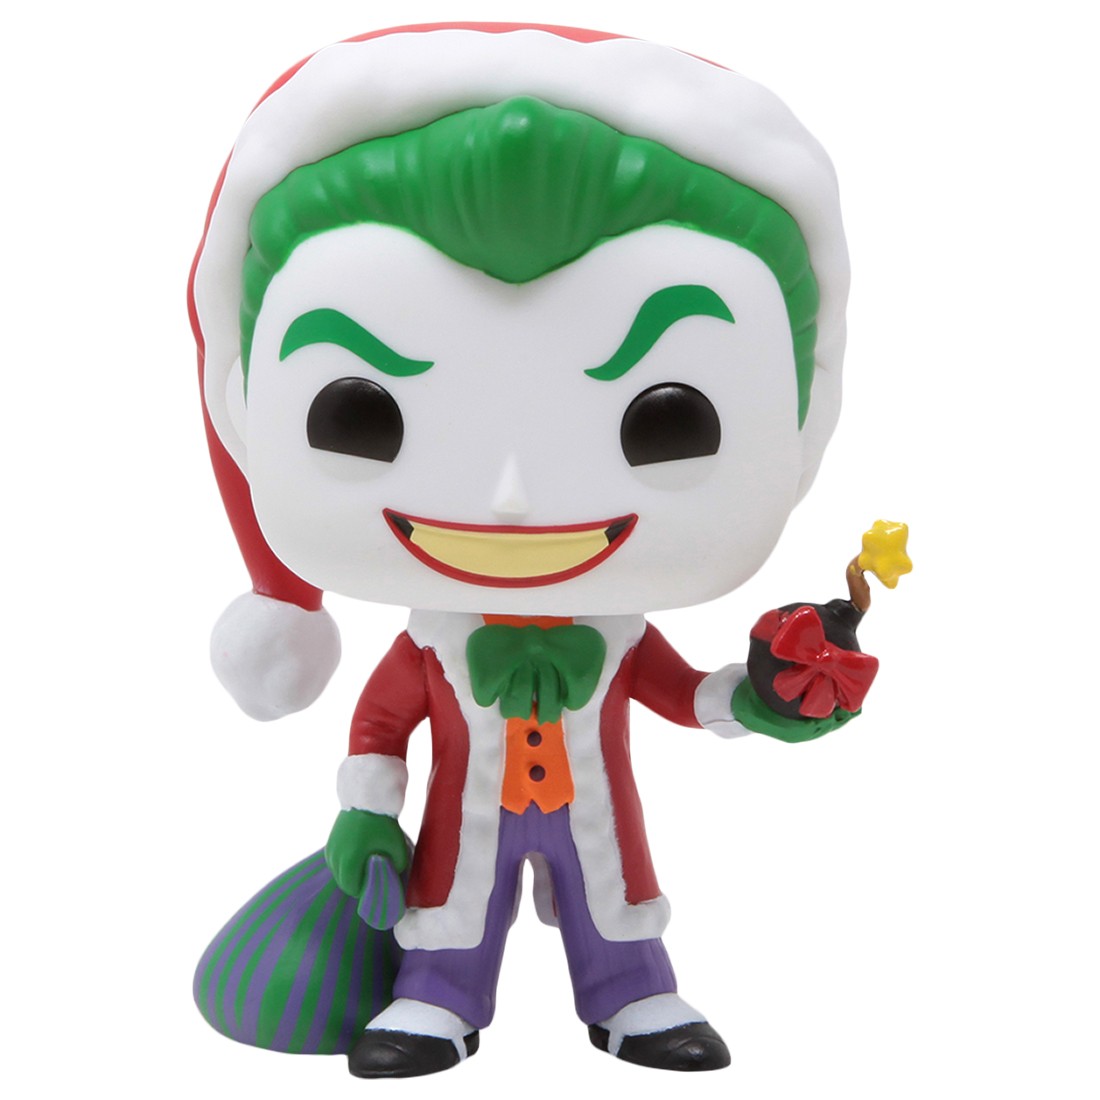 Funko POP Heroes DC Super Heroes - The Joker As Santa (green)